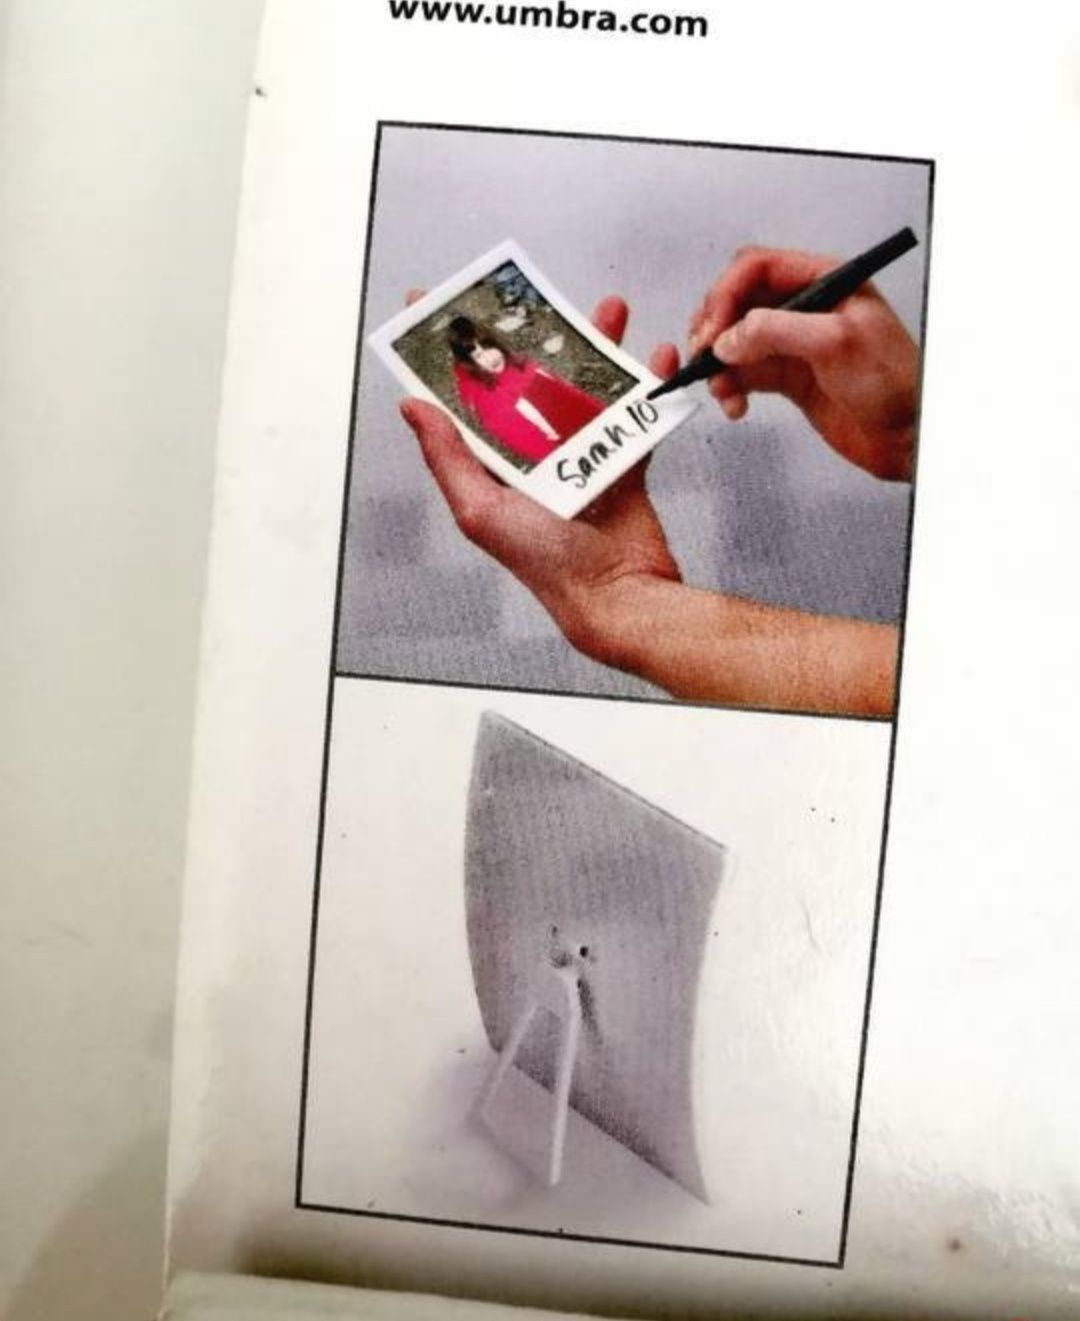 Zestaw 2 ramek na zdjęcia Umbra Snap Wall Decor/Frame Set Of 2 - biały